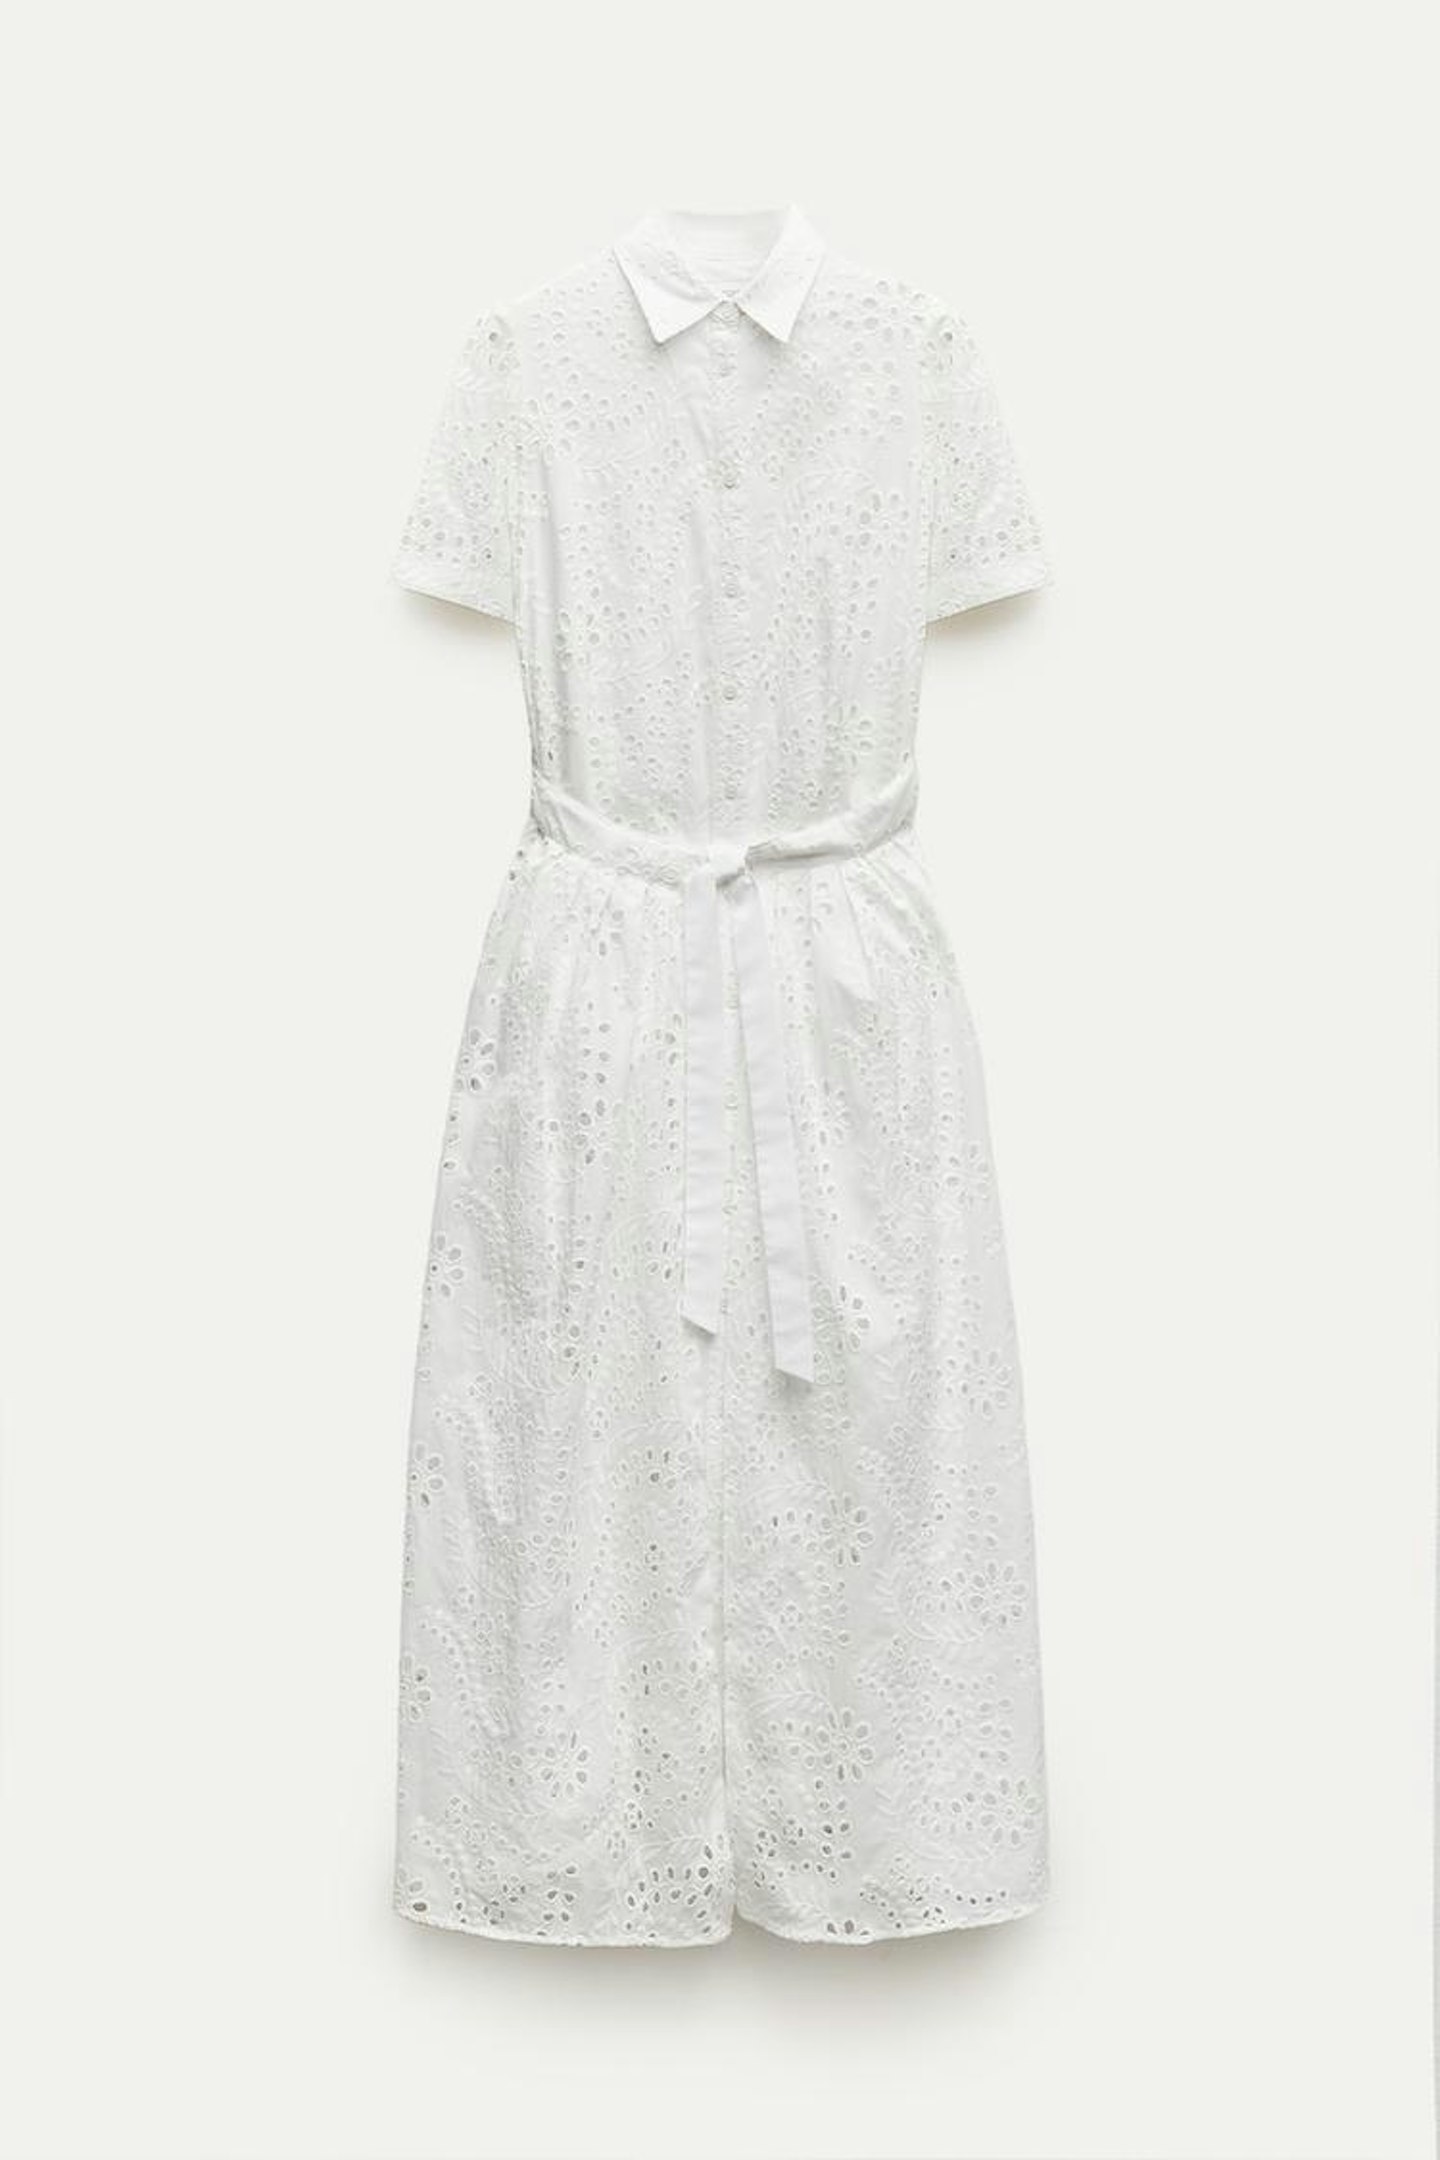 Zara, Embroidered Shirt Dress